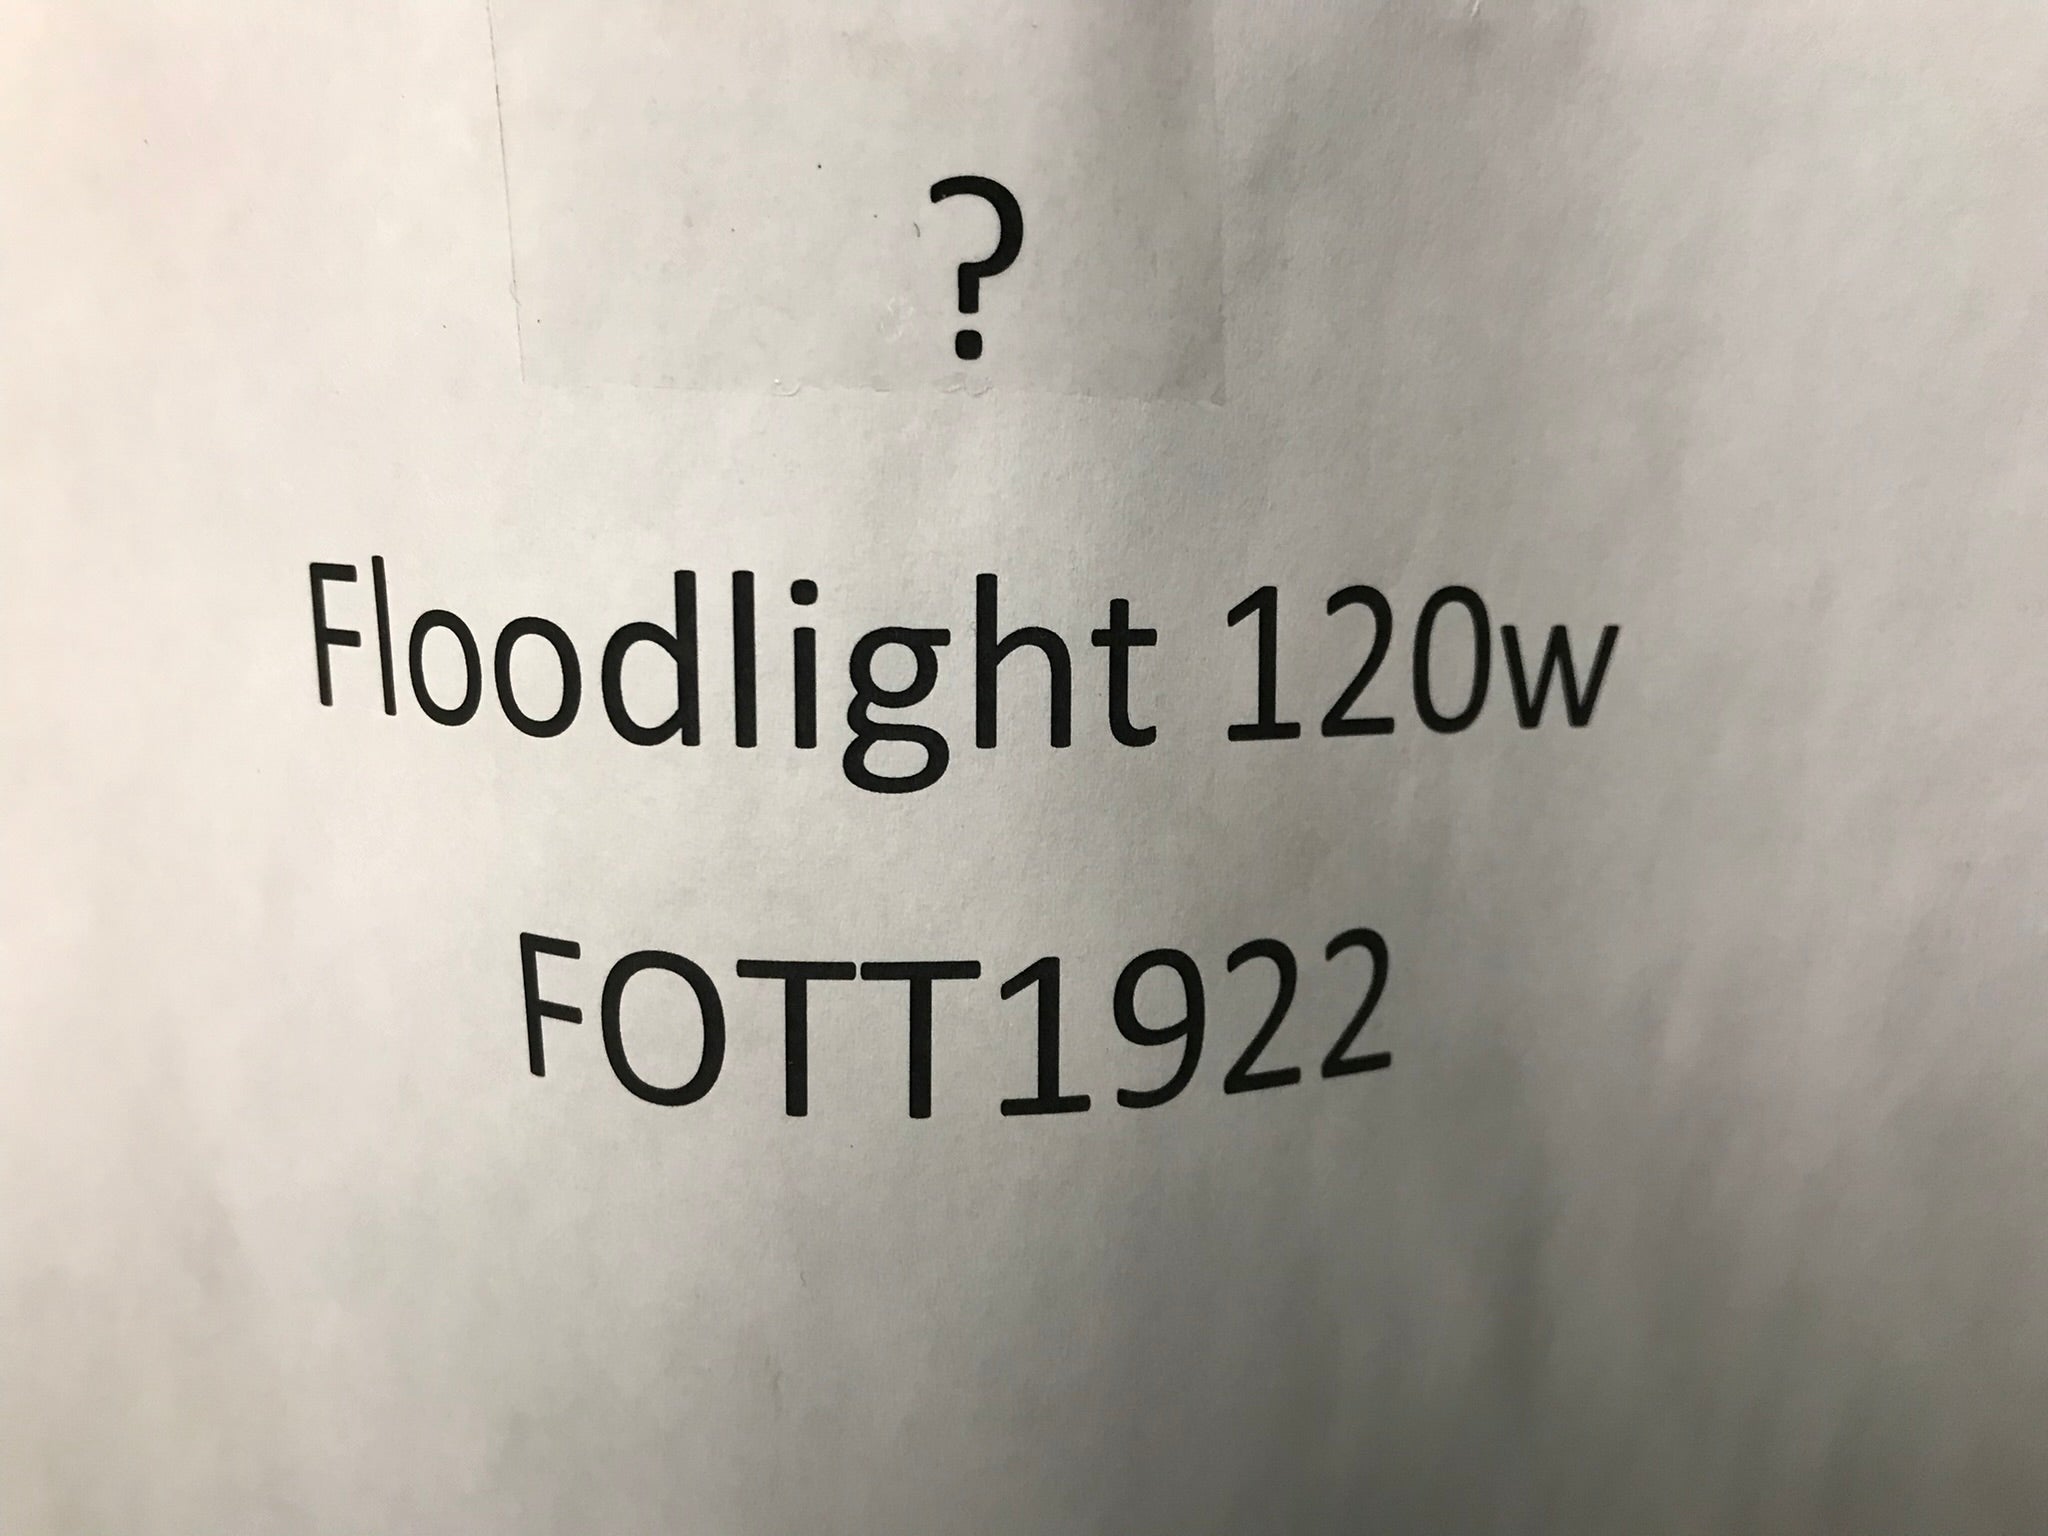 Floodlight 120w